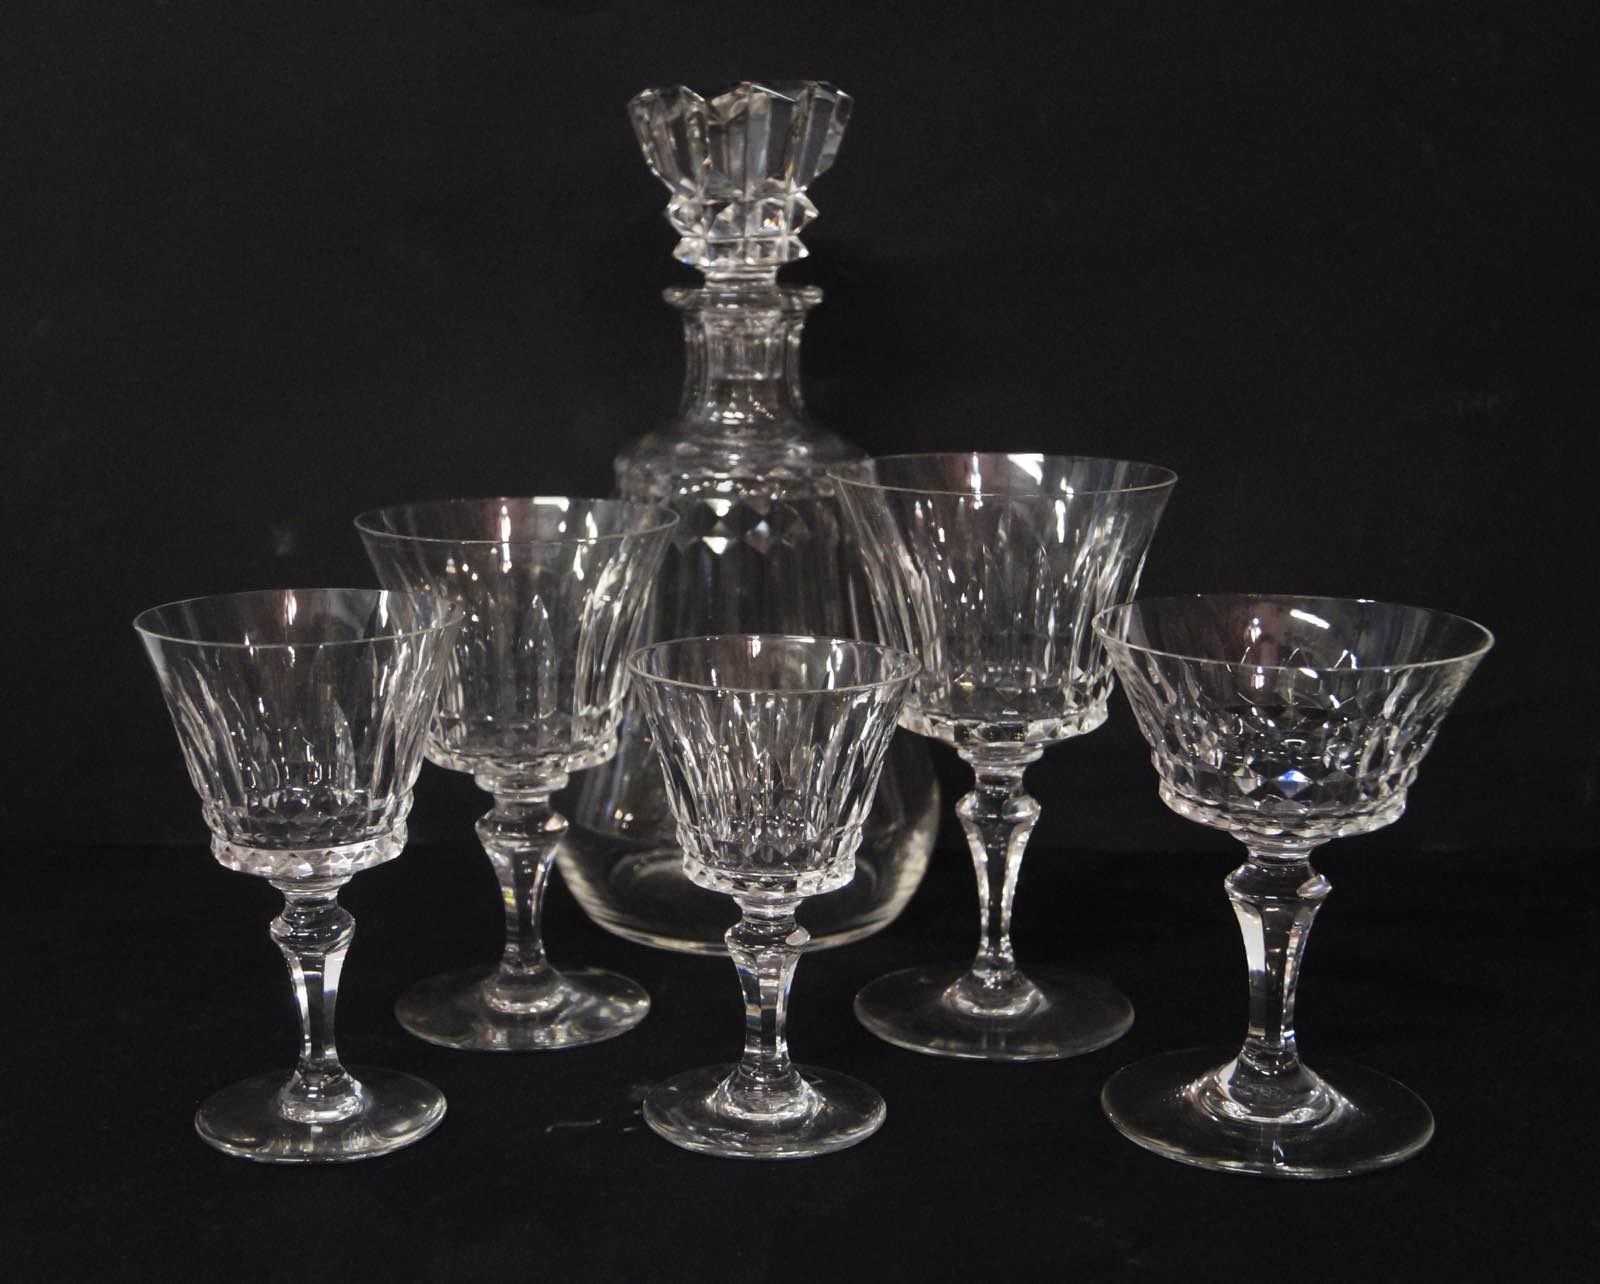 Servizio di bicchieri per 12 persone in cristallo  - Anglicana - online  antiques auctions